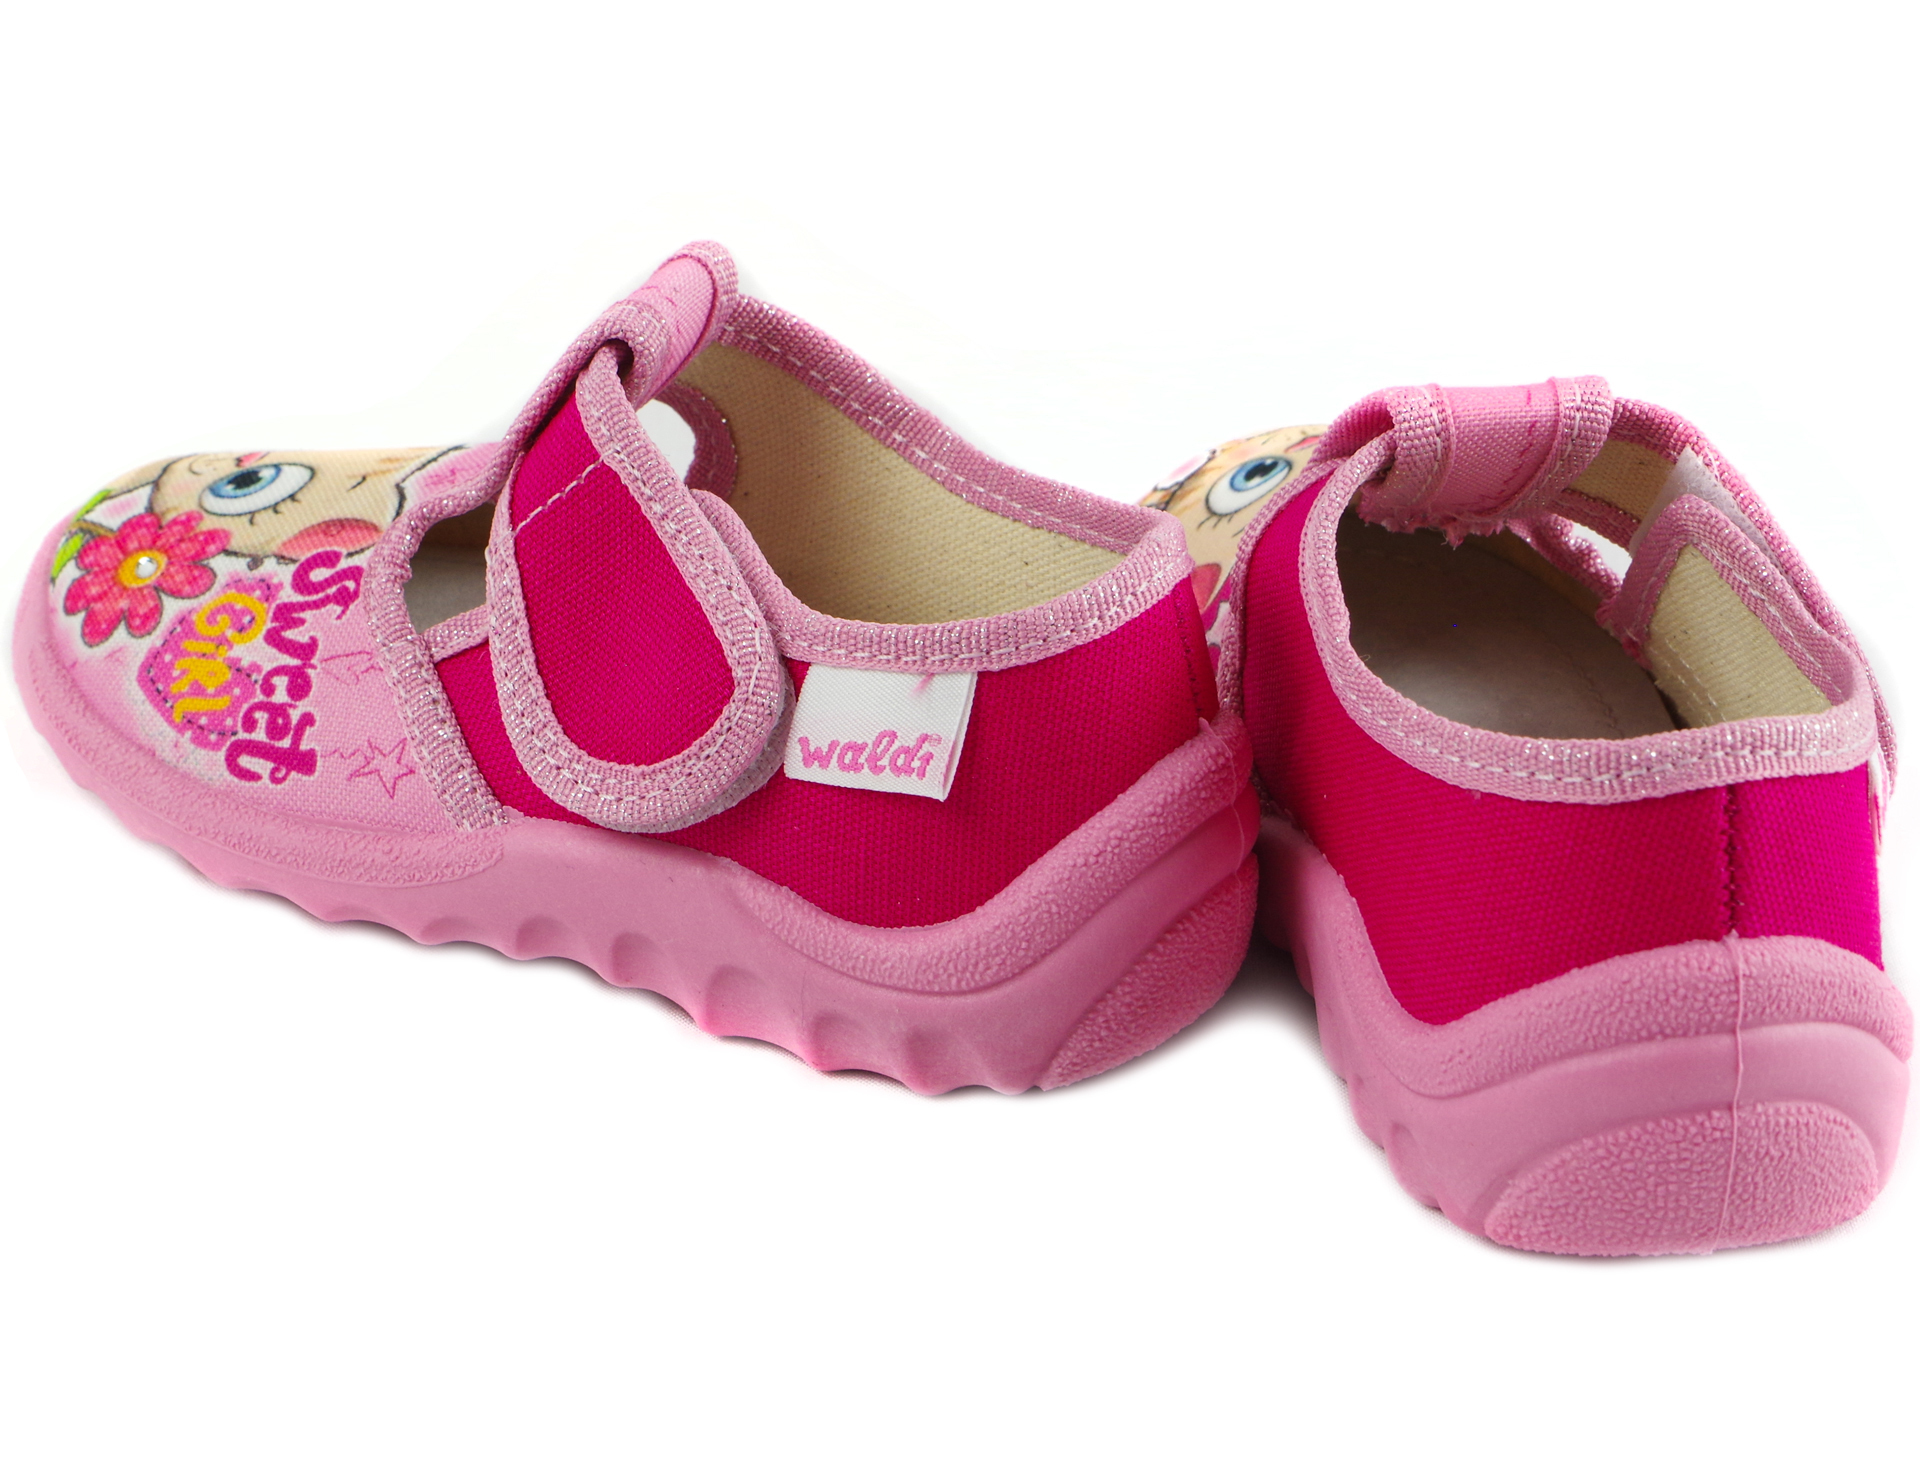 Текстильная обувь для девочек Тапочки Даша (1911) цвет Розовый 21-27 размеры – Sole Kids. Фото 2